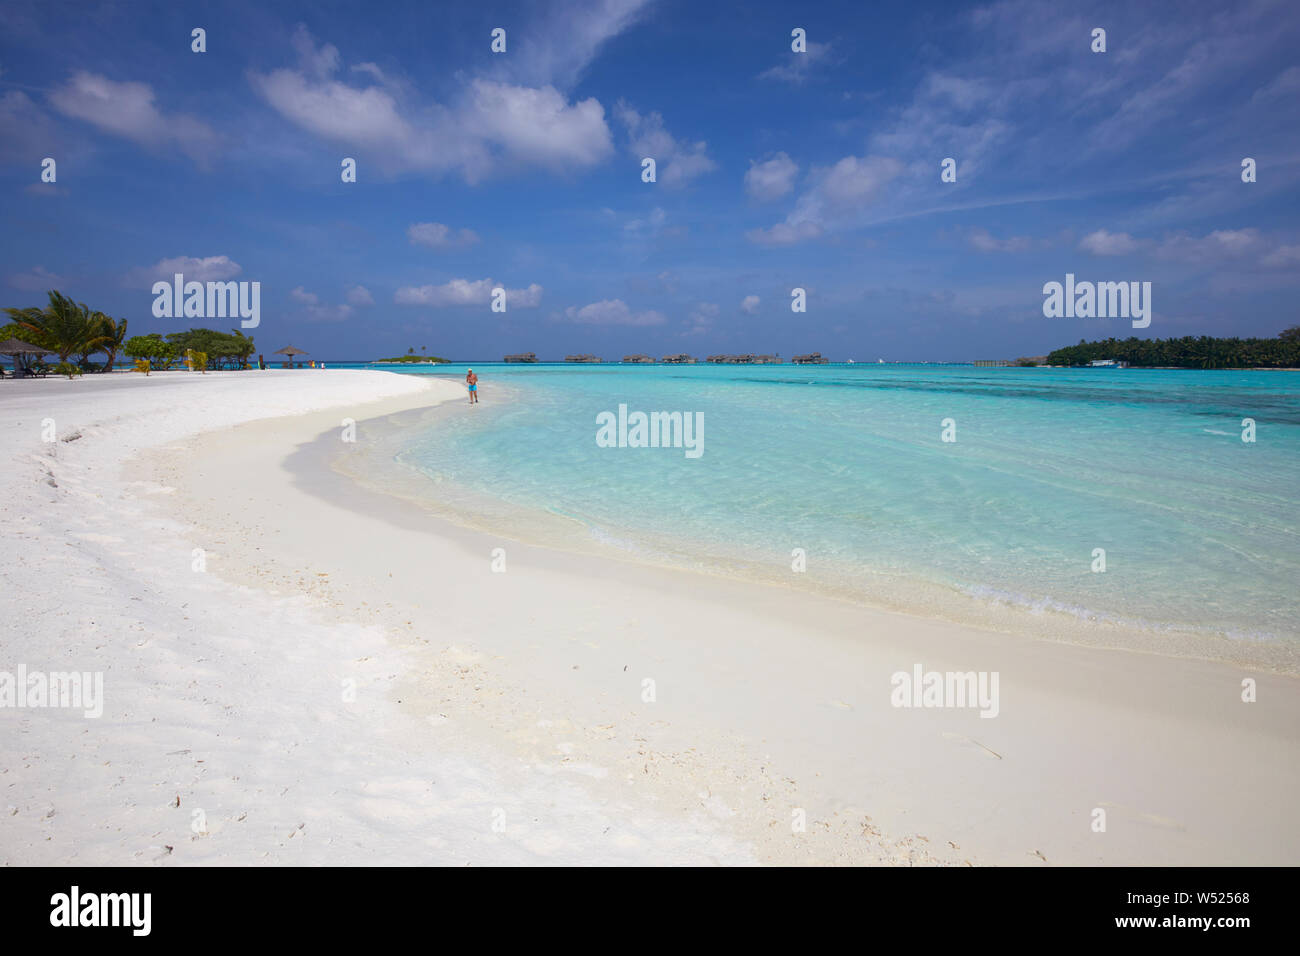 La spiaggia di sabbia bianca di Paradise Island (Lankanfinolhu), Maldive Foto Stock